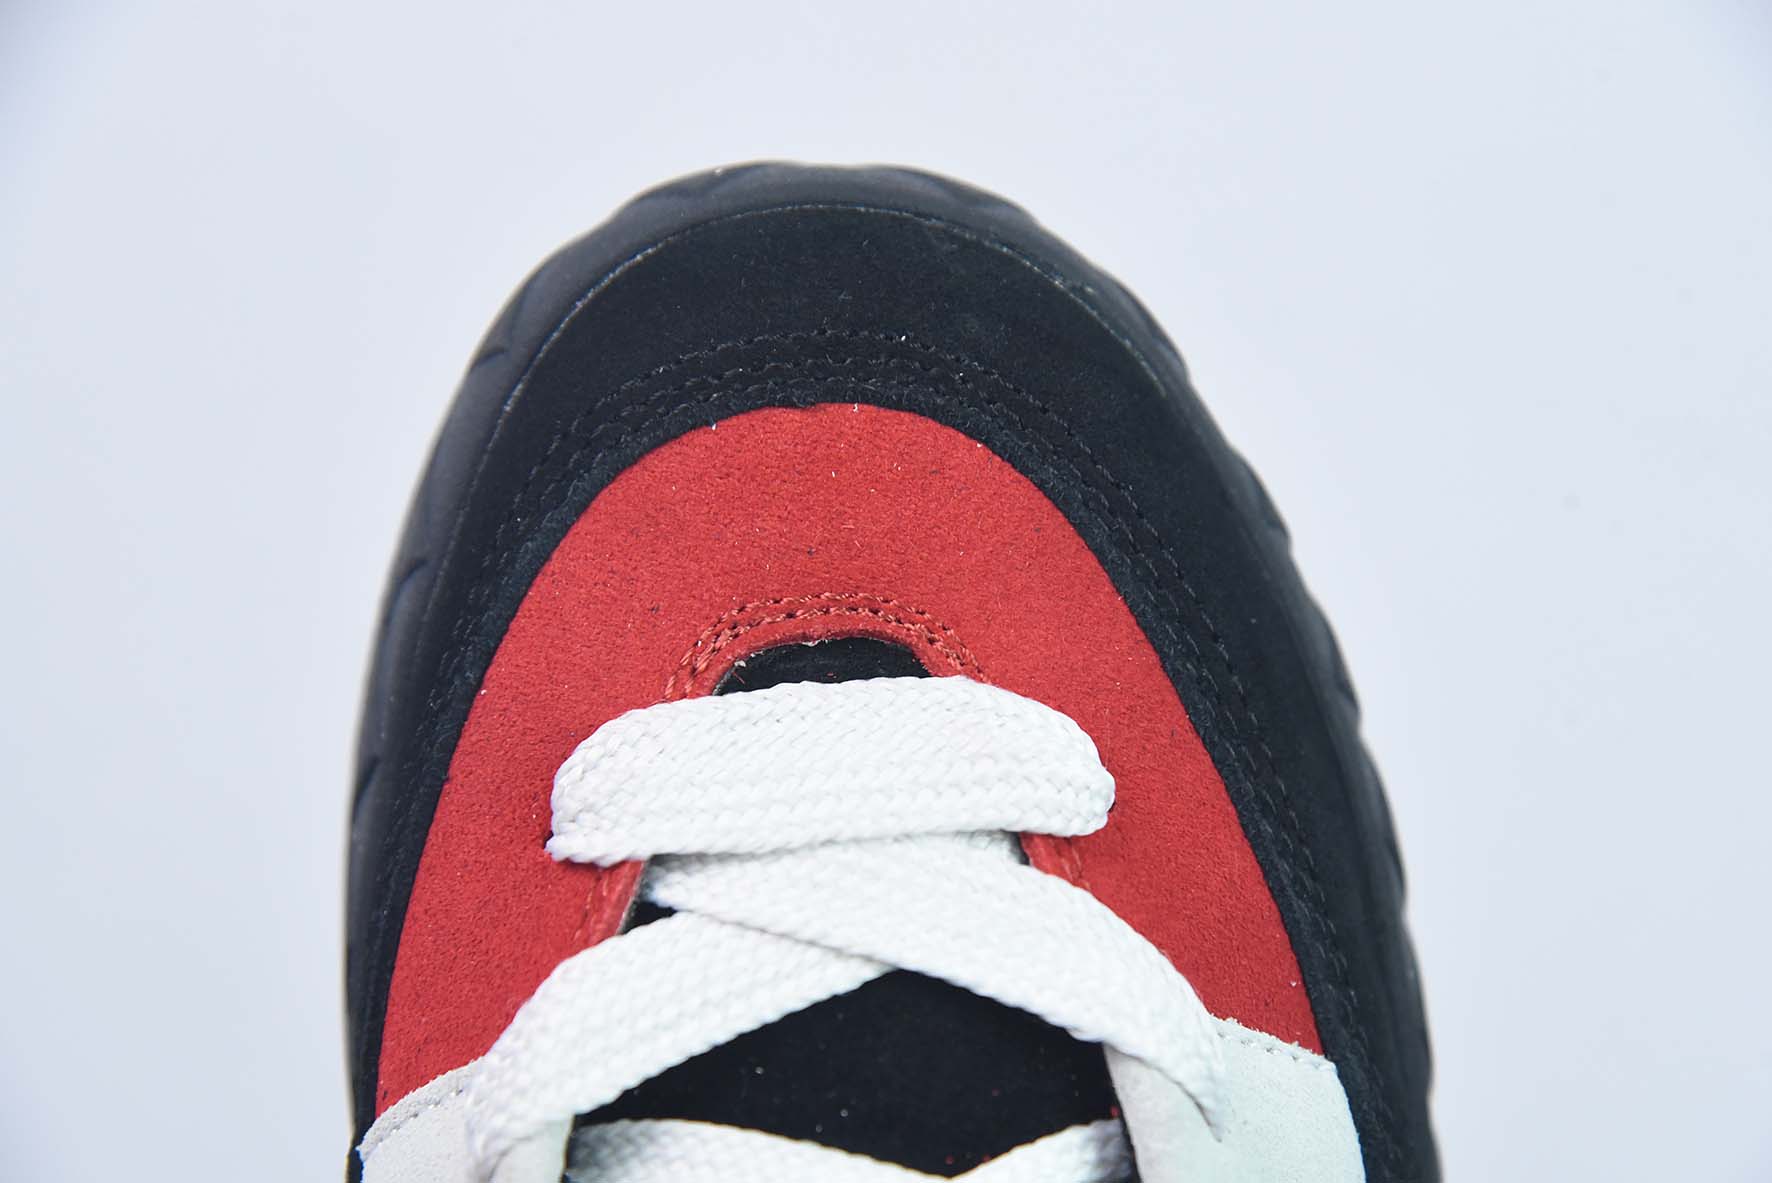 AD Adimatic Low 马蒂奇系列低帮 黑红 复古鲨鱼面包鞋运动休闲滑板板鞋 货号：GY2903